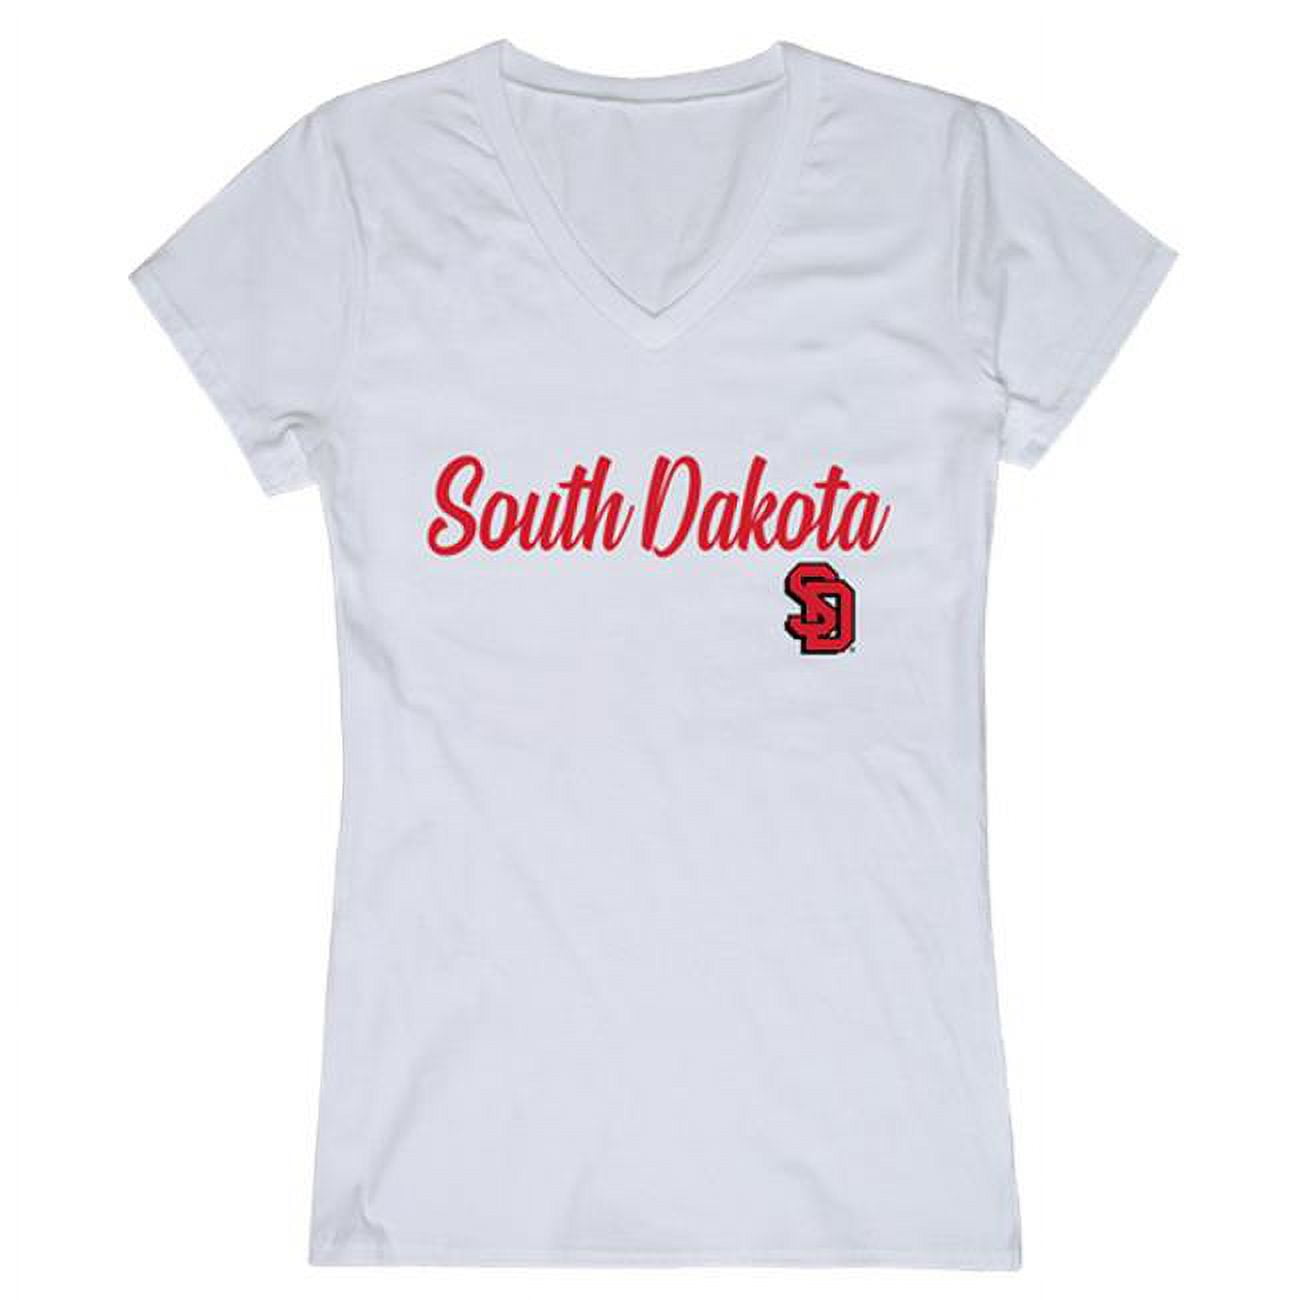 W Republic University Dakota of 2XL 555-148-WHT-05 - T-Shirt, Womens Script White South